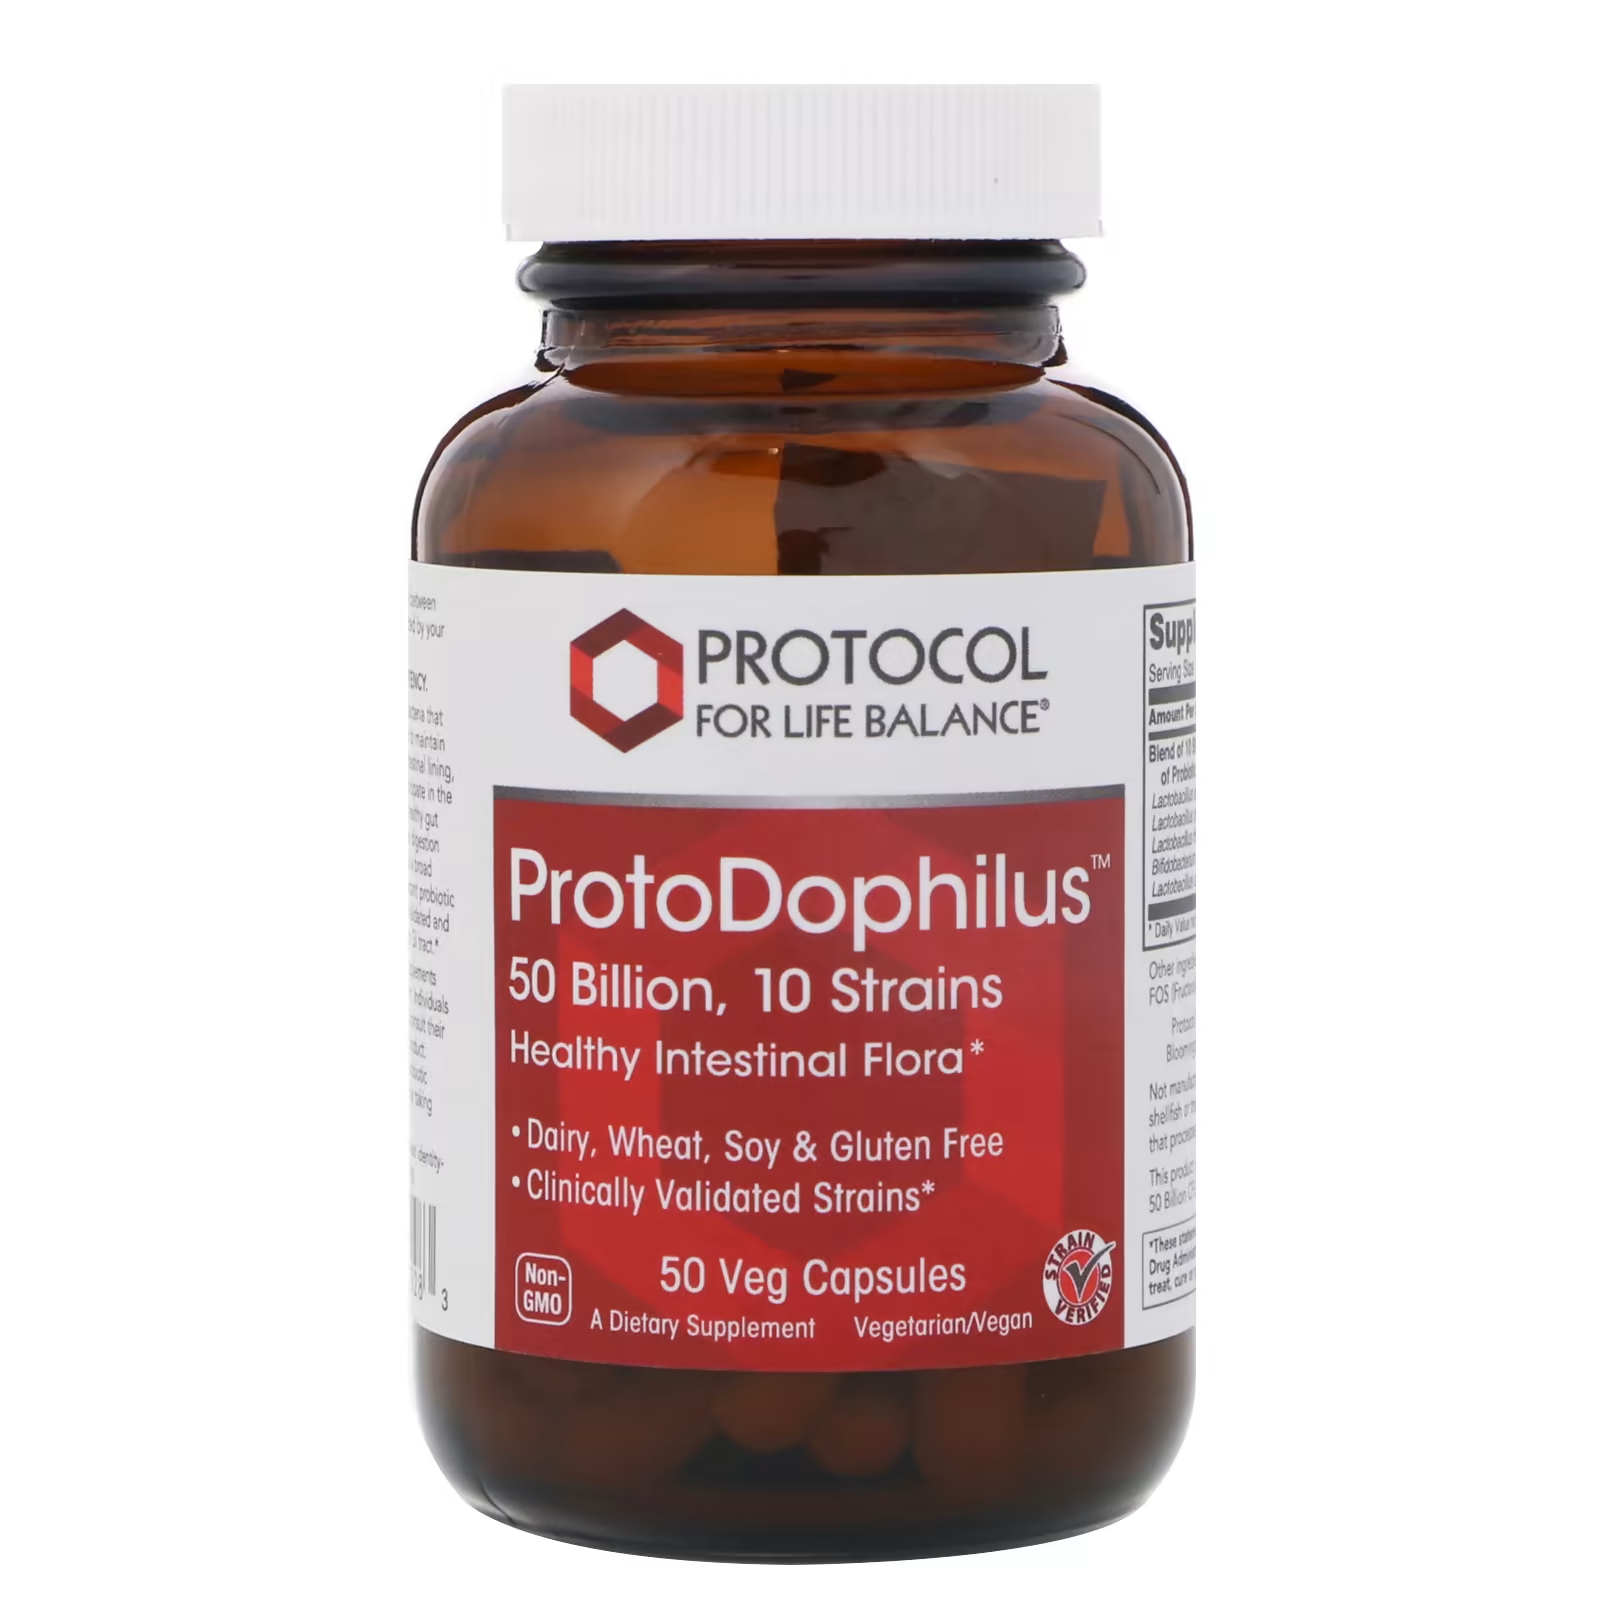 цена Протокол Life Balance ProtoDophilus 50 миллиардов 10 штаммов 50 растительных капсул Protocol for Life Balance